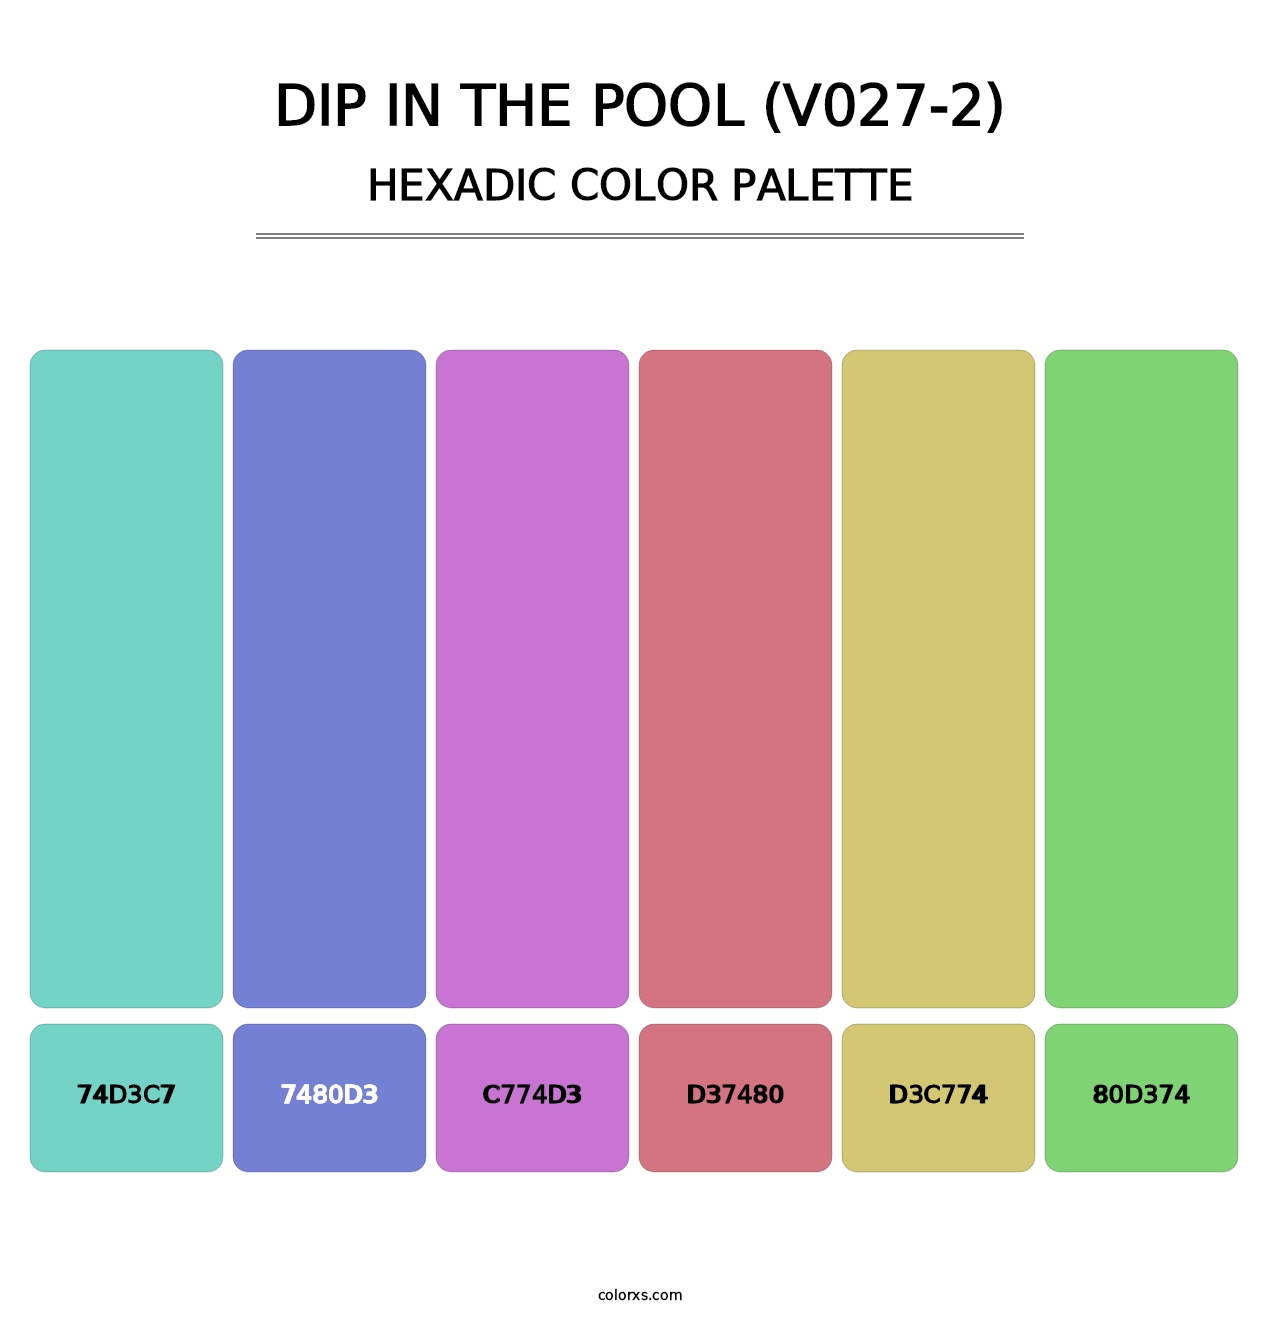 Dip in the Pool (V027-2) - Hexadic Color Palette